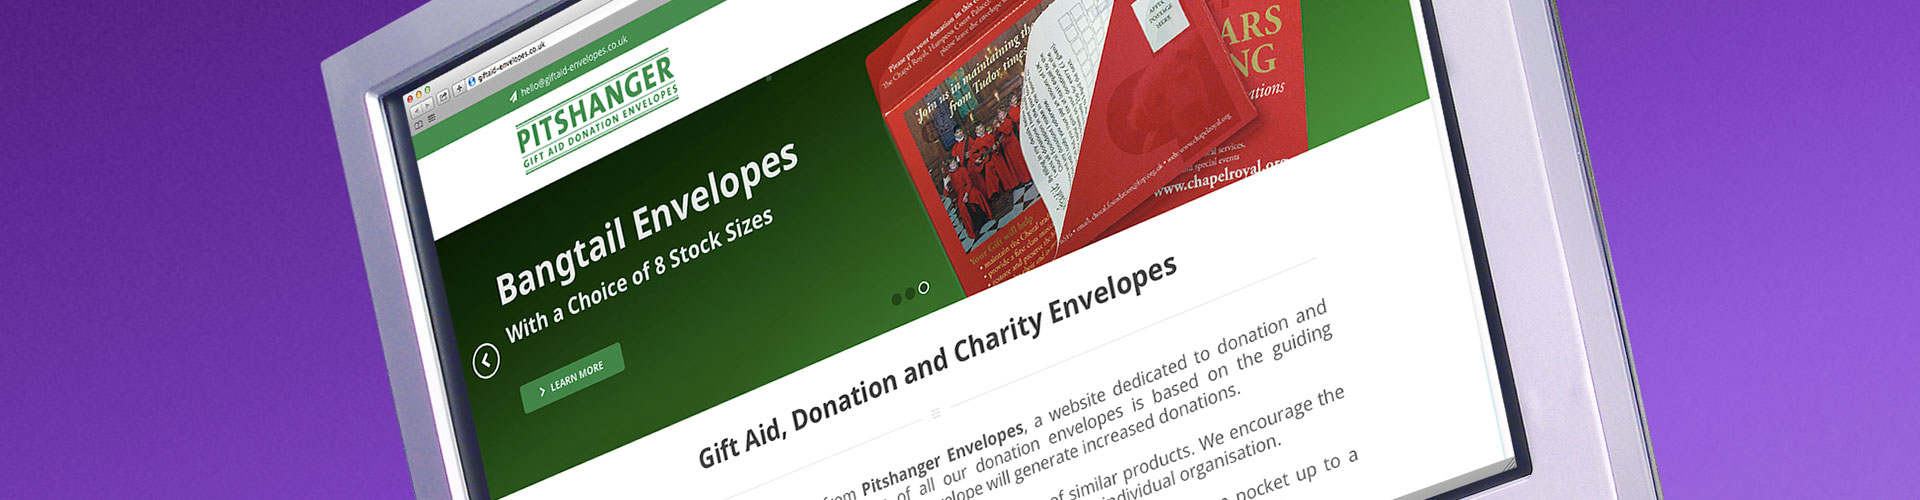 gift aid envelopes website design